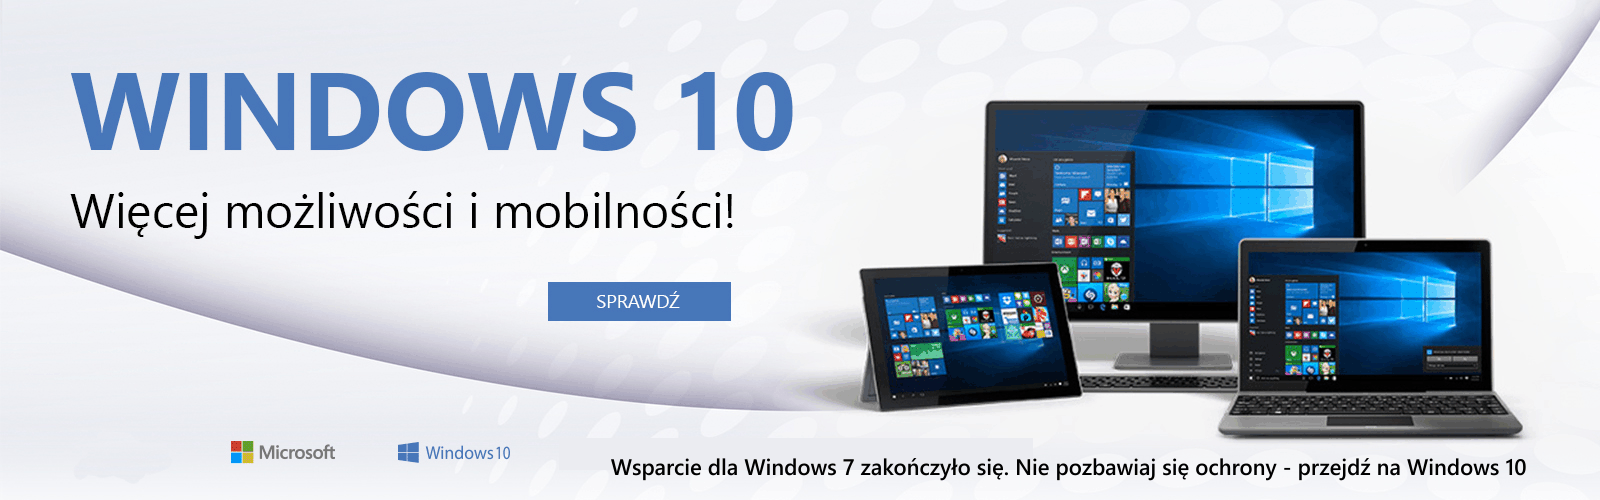 Przejdź na Windows 10 teraz